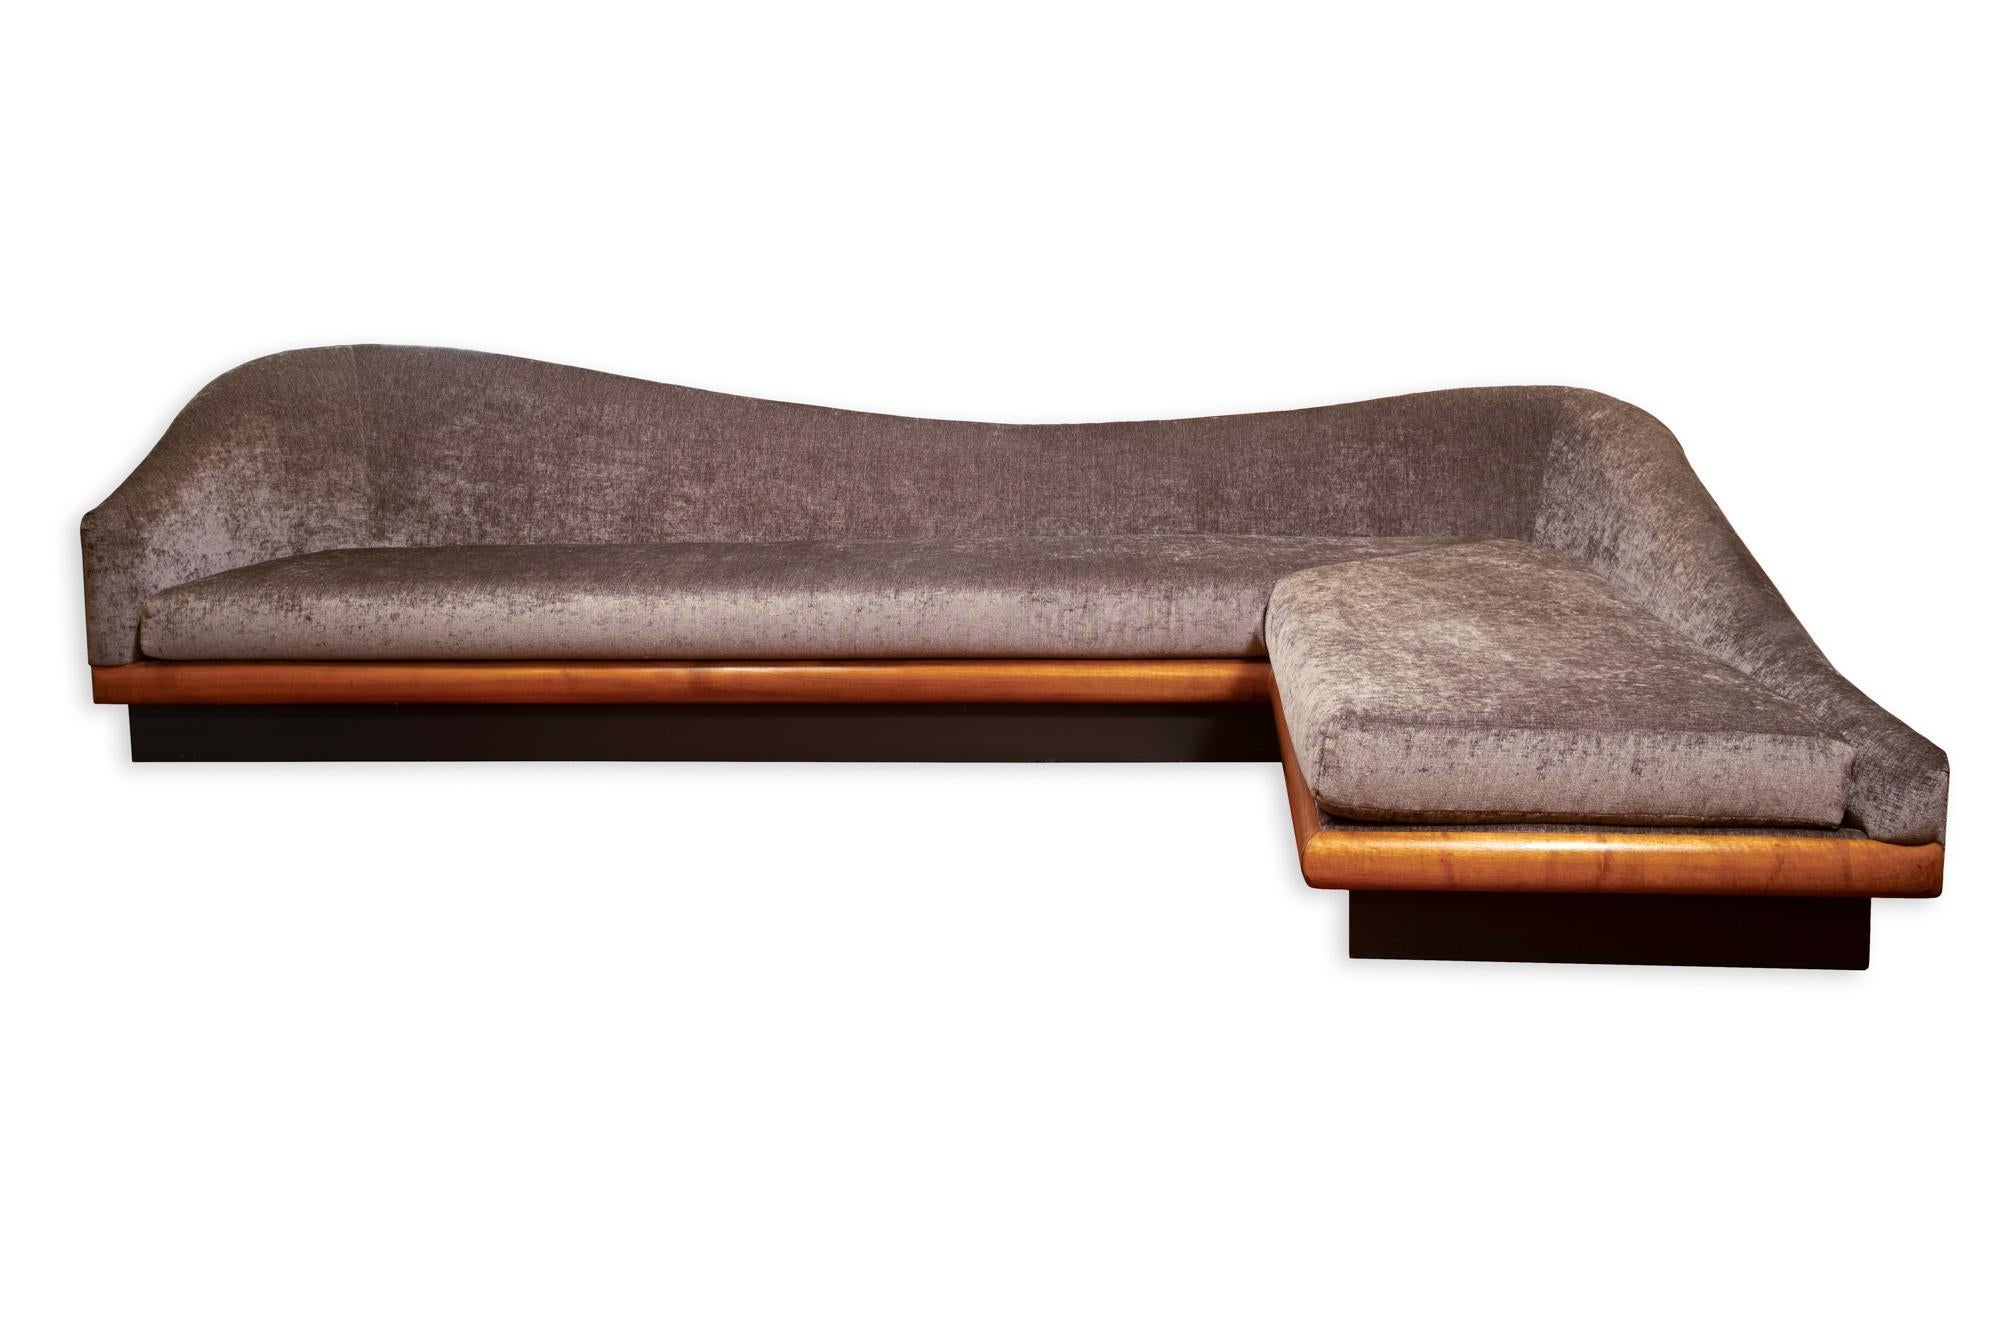 Adrian Pearsall Wolken-Sofa aus der Mitte des Jahrhunderts

Sofa misst: 124 breit x 72 tief x 31,5 Zoll hoch

Alle Möbelstücke sind in einem so genannten restaurierten Vintage-Zustand zu haben. Das bedeutet, dass das Stück beim Kauf restauriert